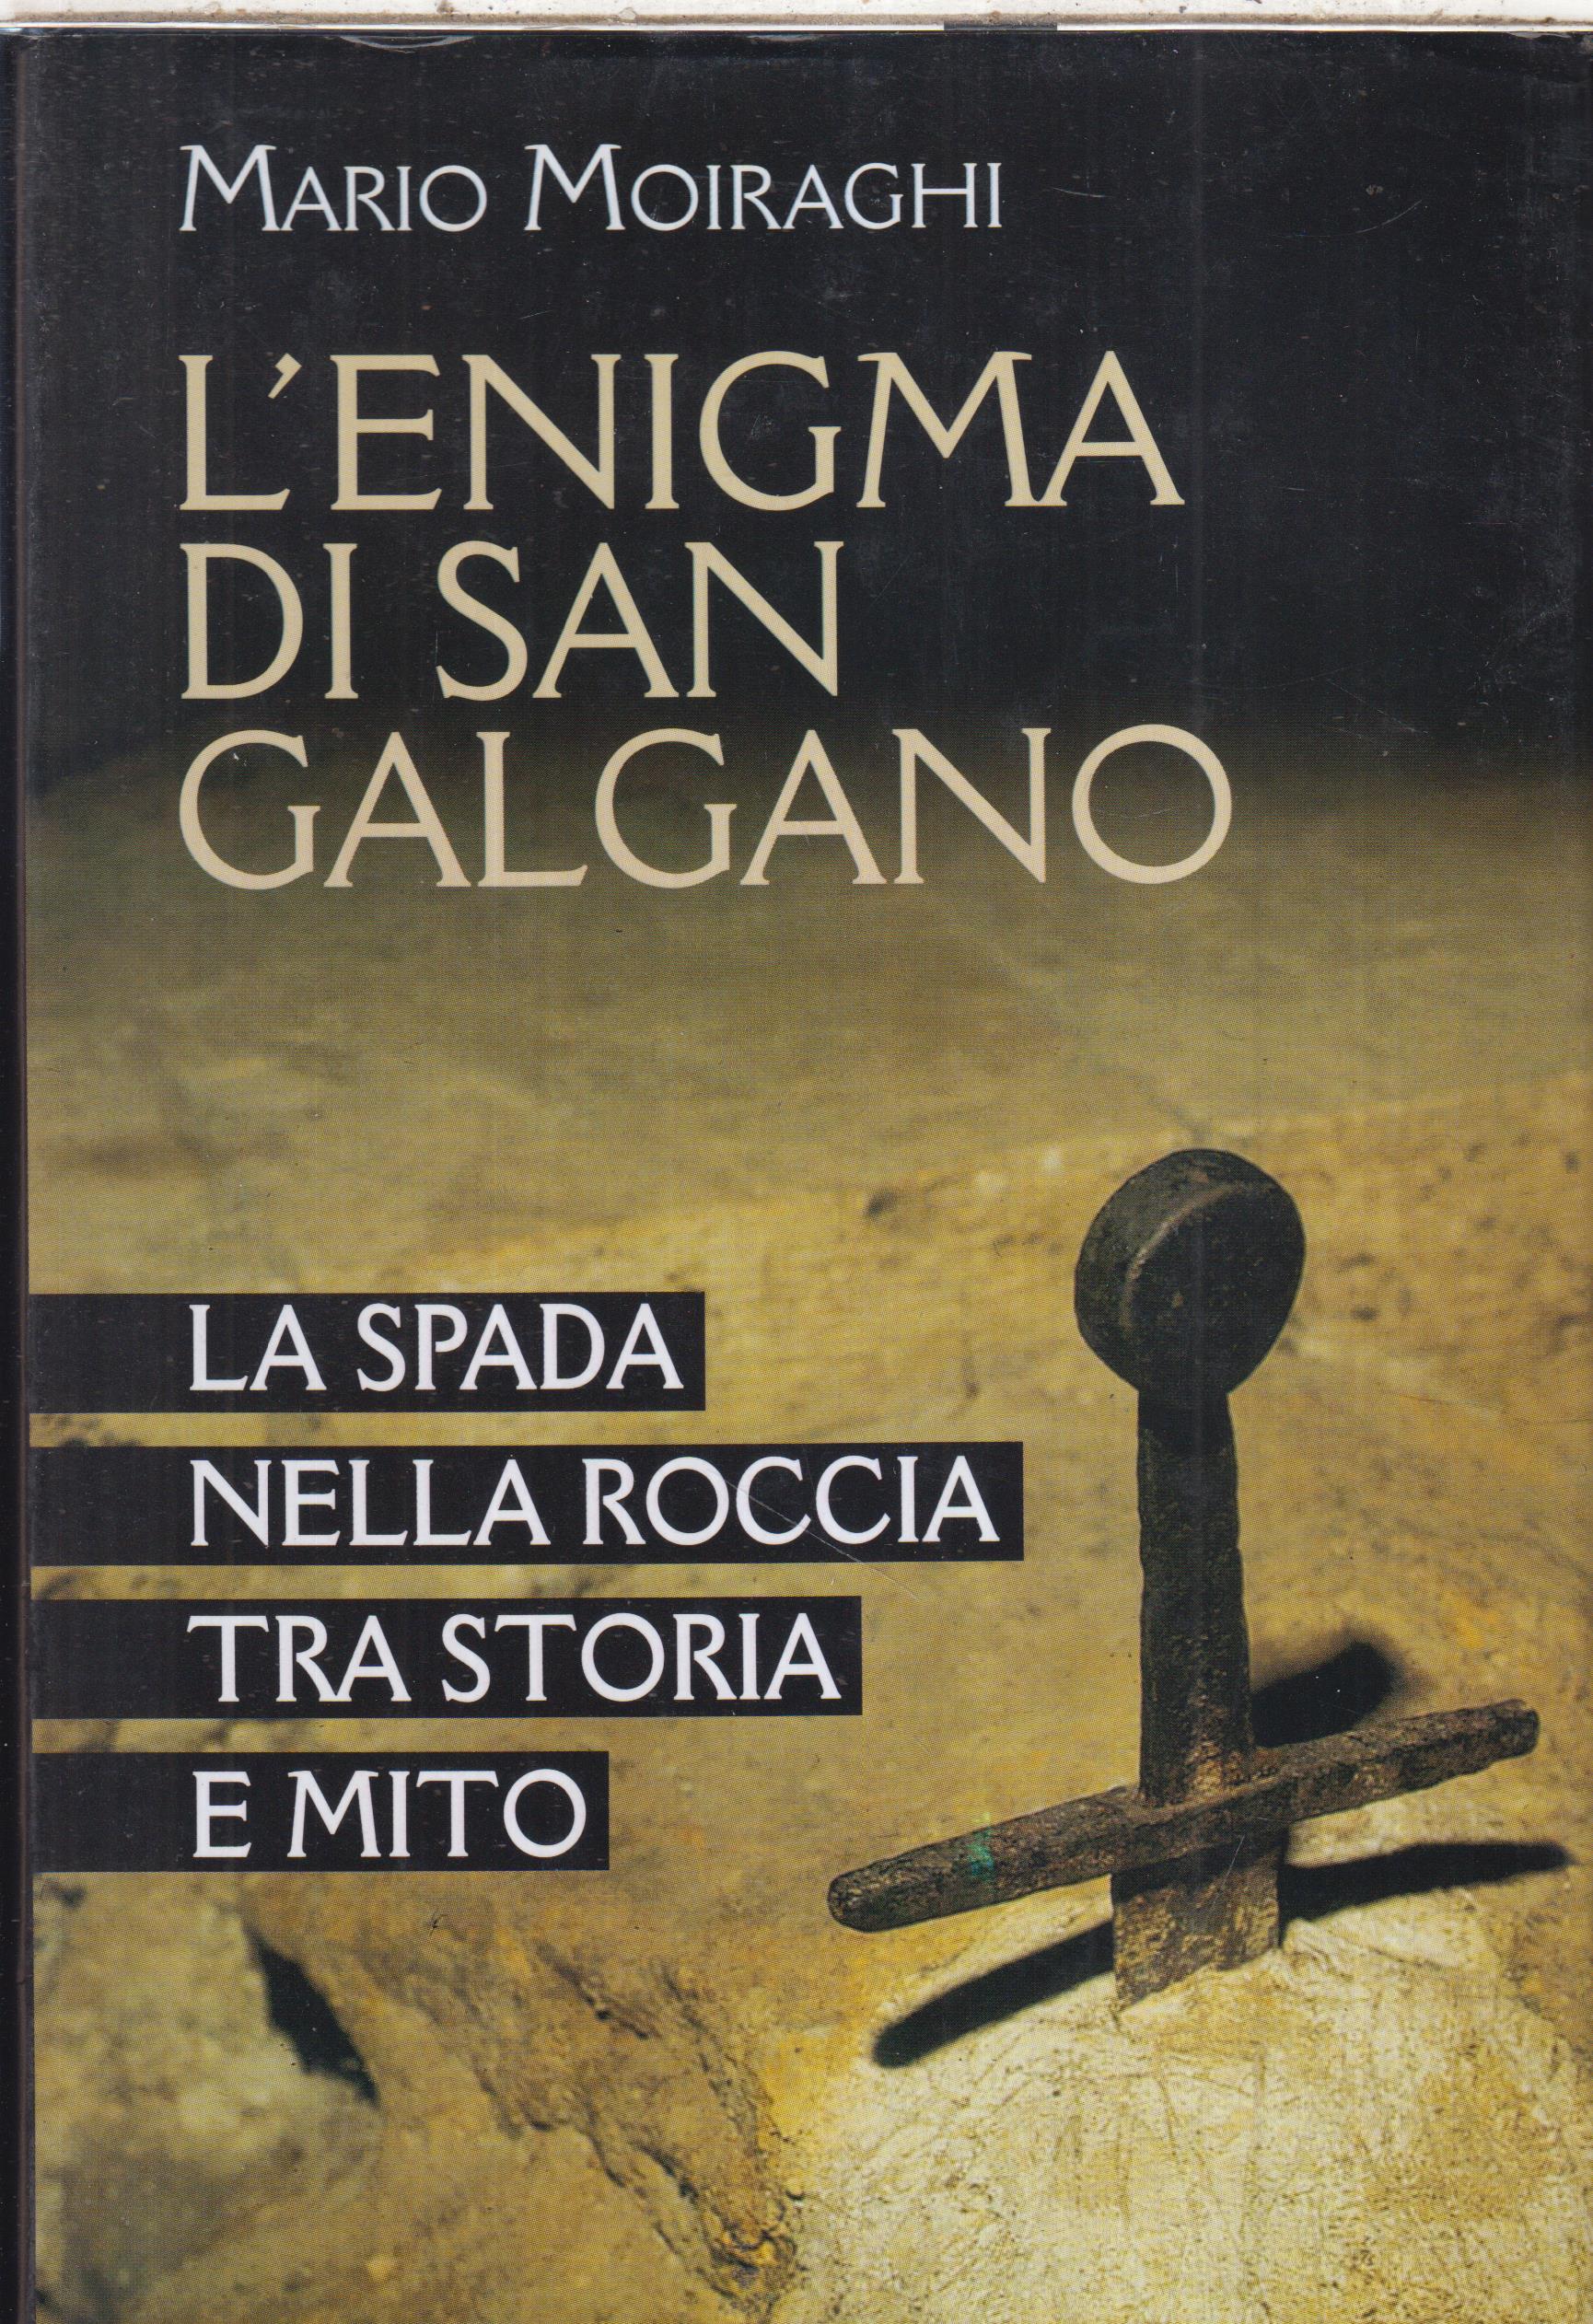 L’ Enigma di San Galgano - la spada nella roccia tra storia e mito, Mario Moiraghi